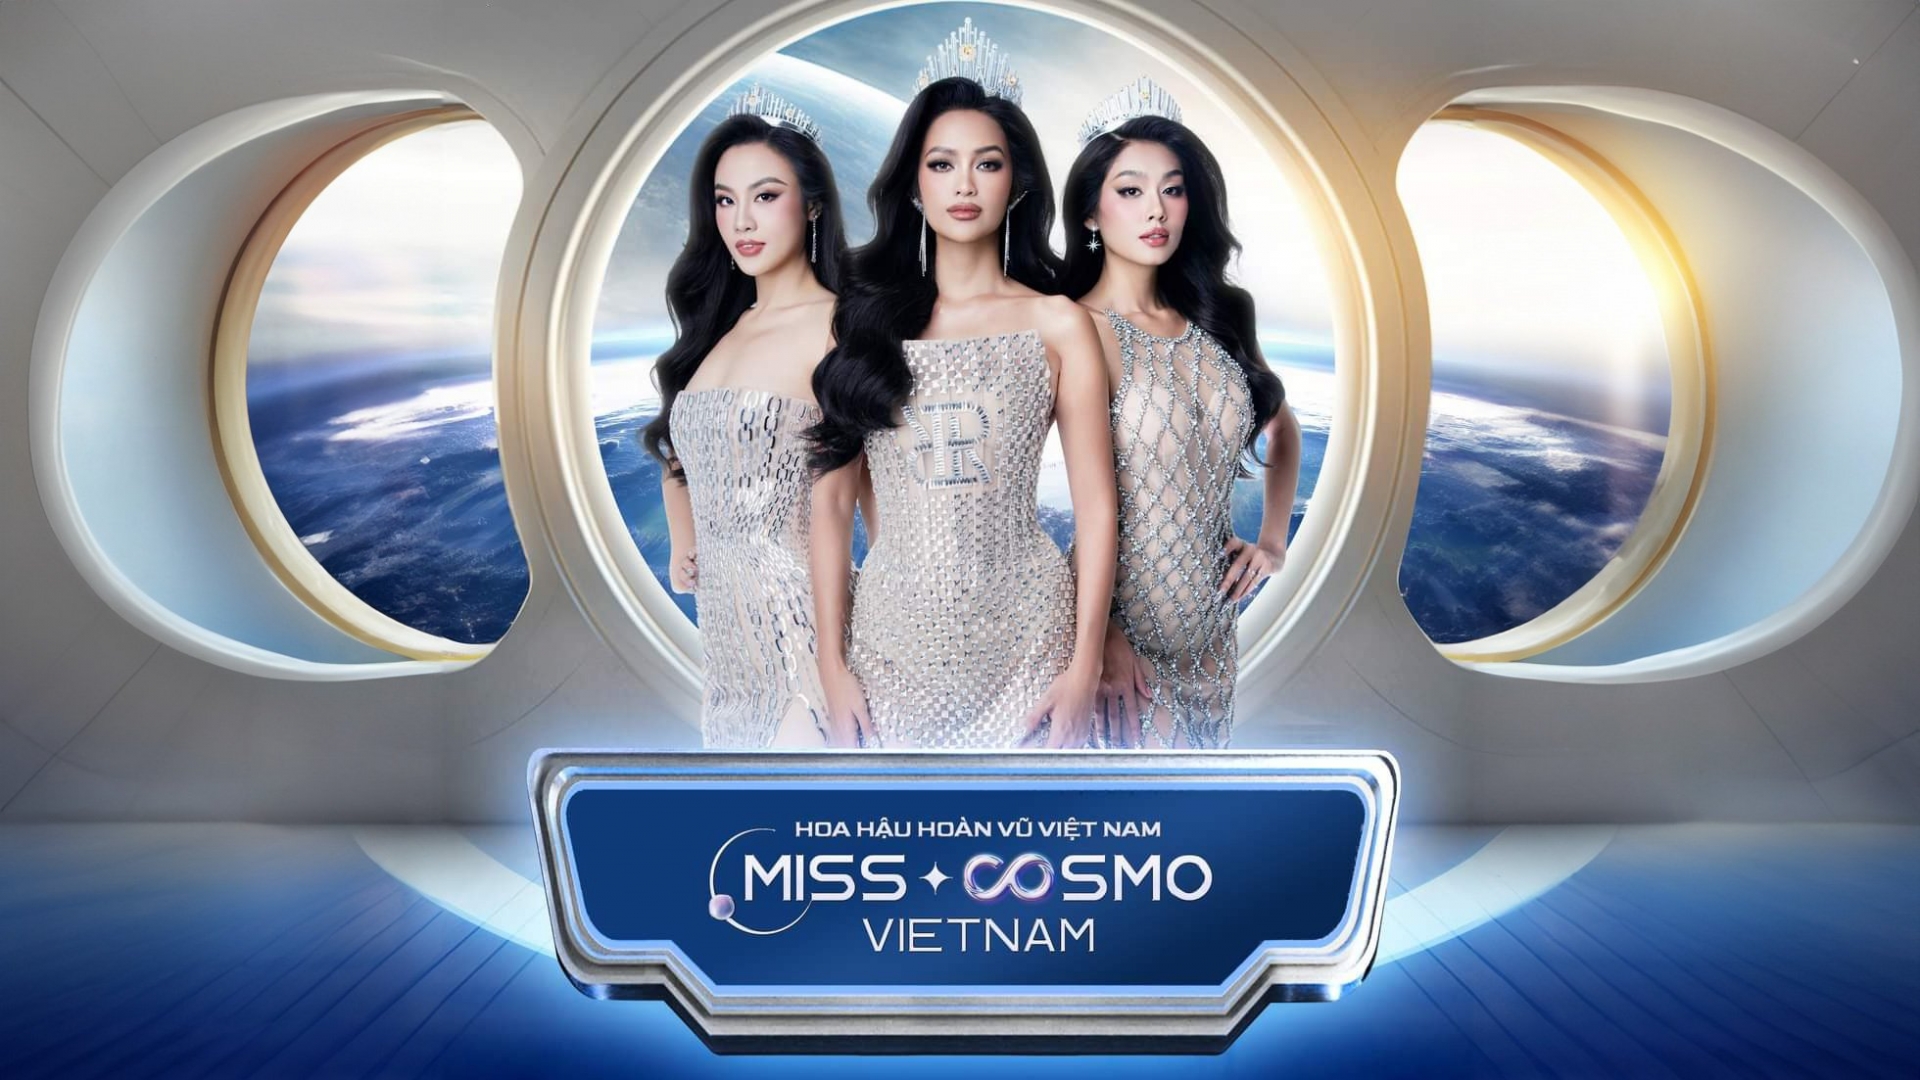 Chung kết Cuộc thi Hoa hậu Hoàn vũ Việt Nam 2023 sẽ diễn ra đêm 31/12 tại Đà Lạt